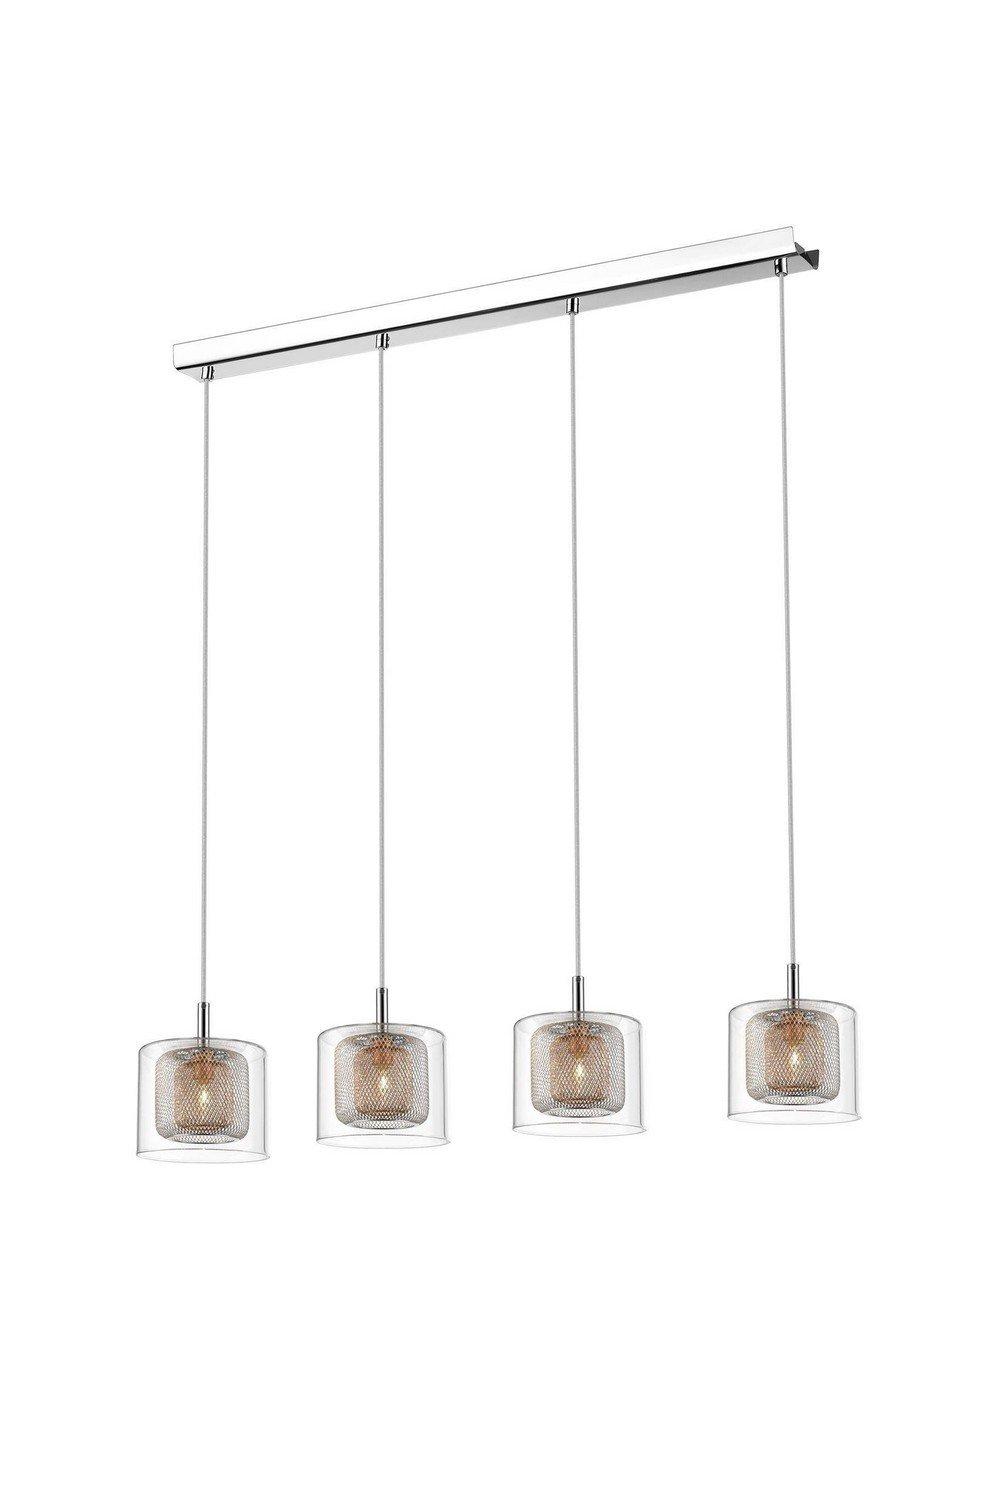 Spring 4 Light Ceiling Pendant Bar Mesh Chrome Copper Glass G9